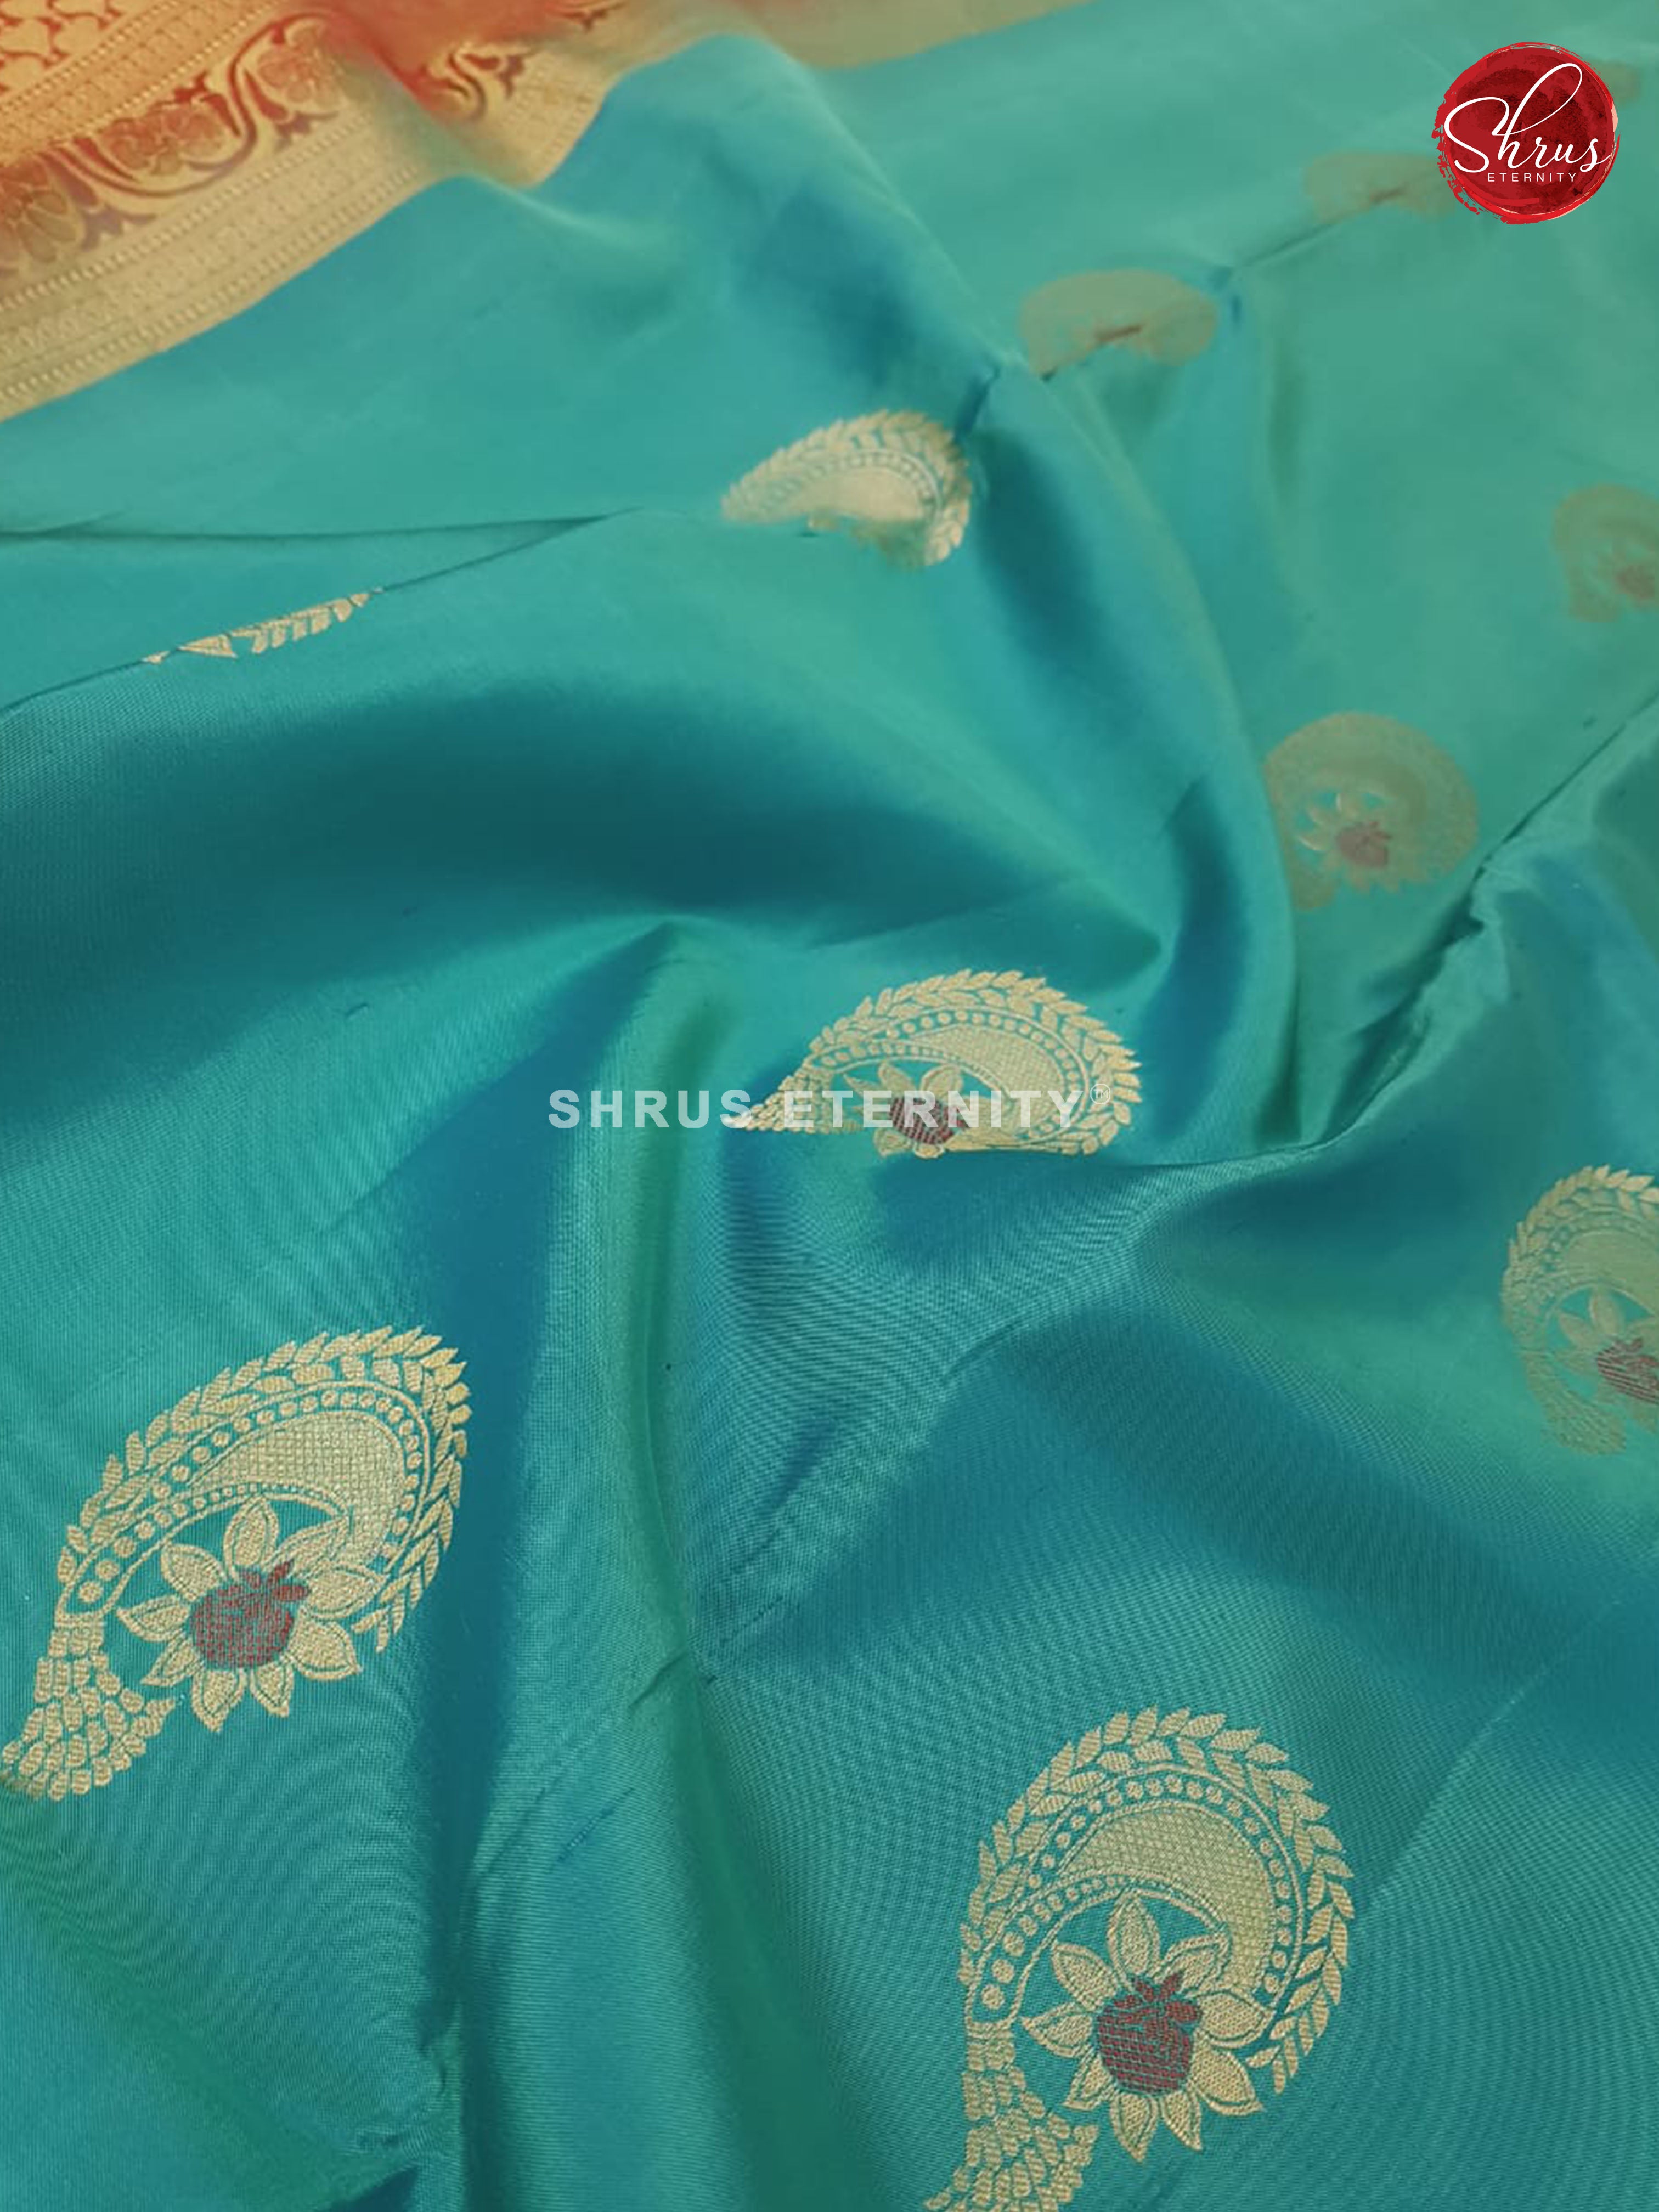 Teal Blue & Red - Kanchipuram Silk - Shop on ShrusEternity.com